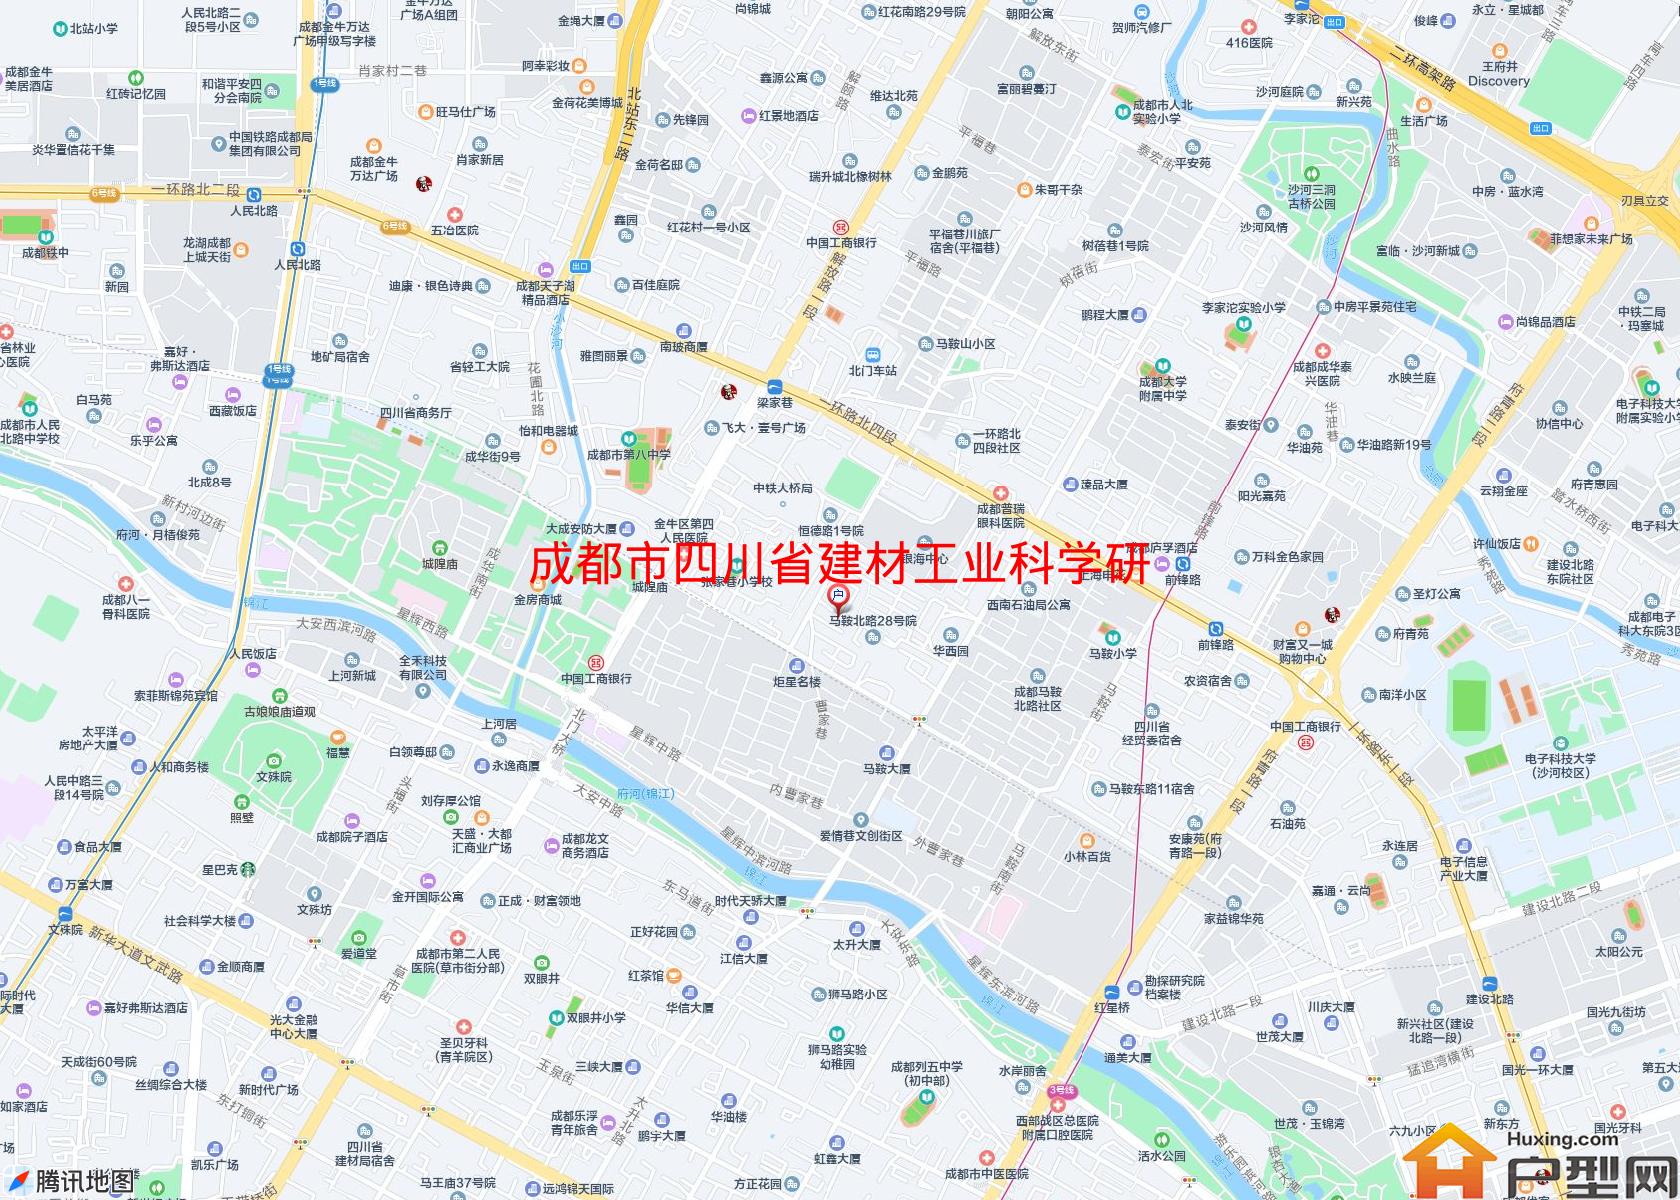 四川省建材工业科学研究院宿舍小区 - 户型网